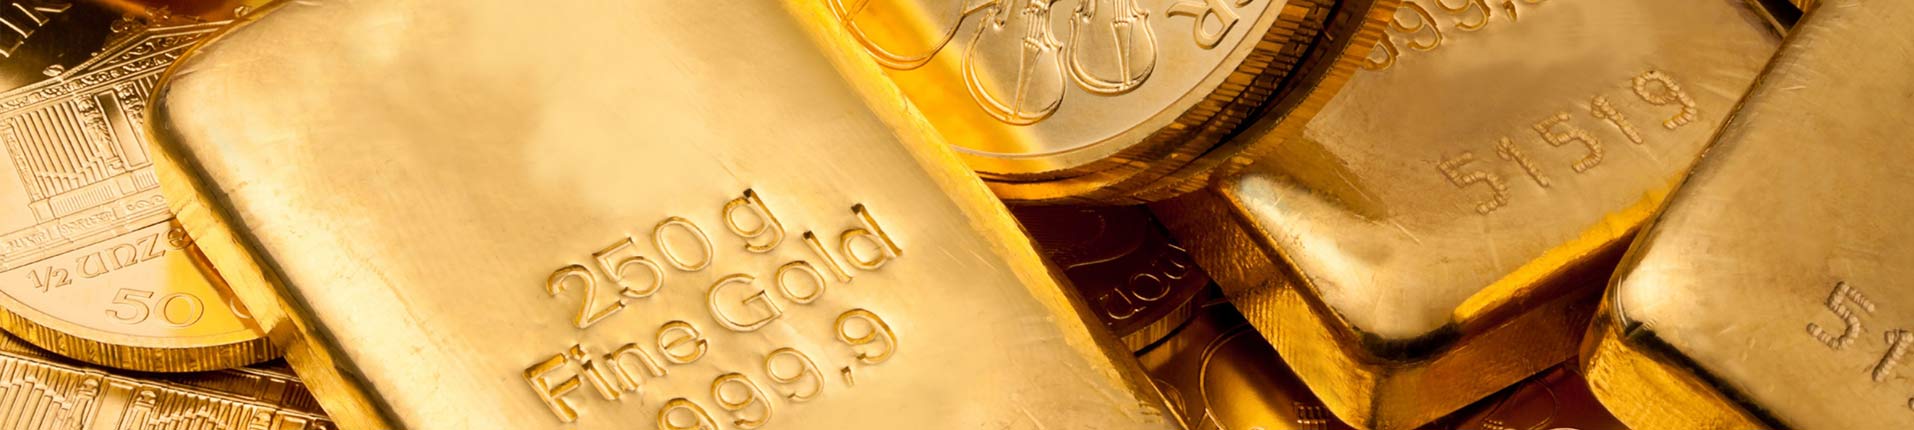 Goud verkopen in Waals-Brabant